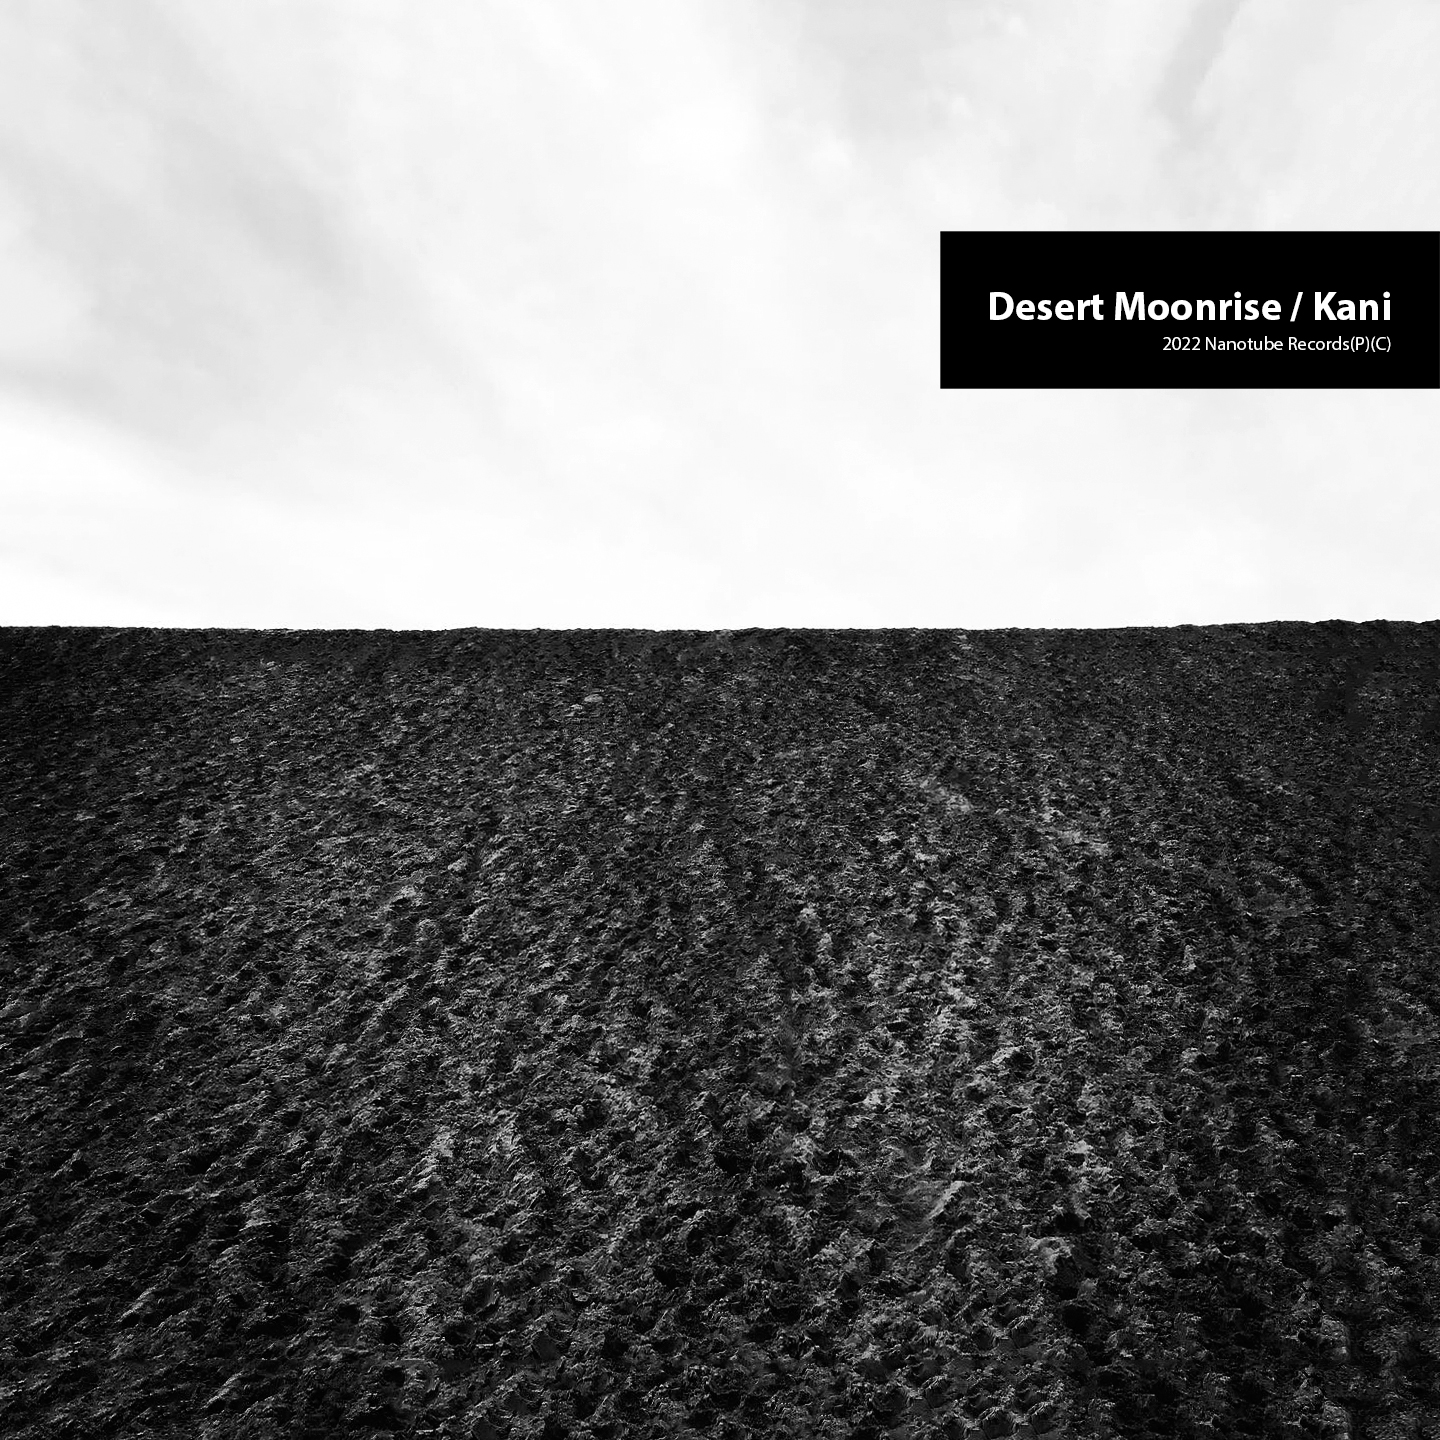 Desert Moonrise / Kani